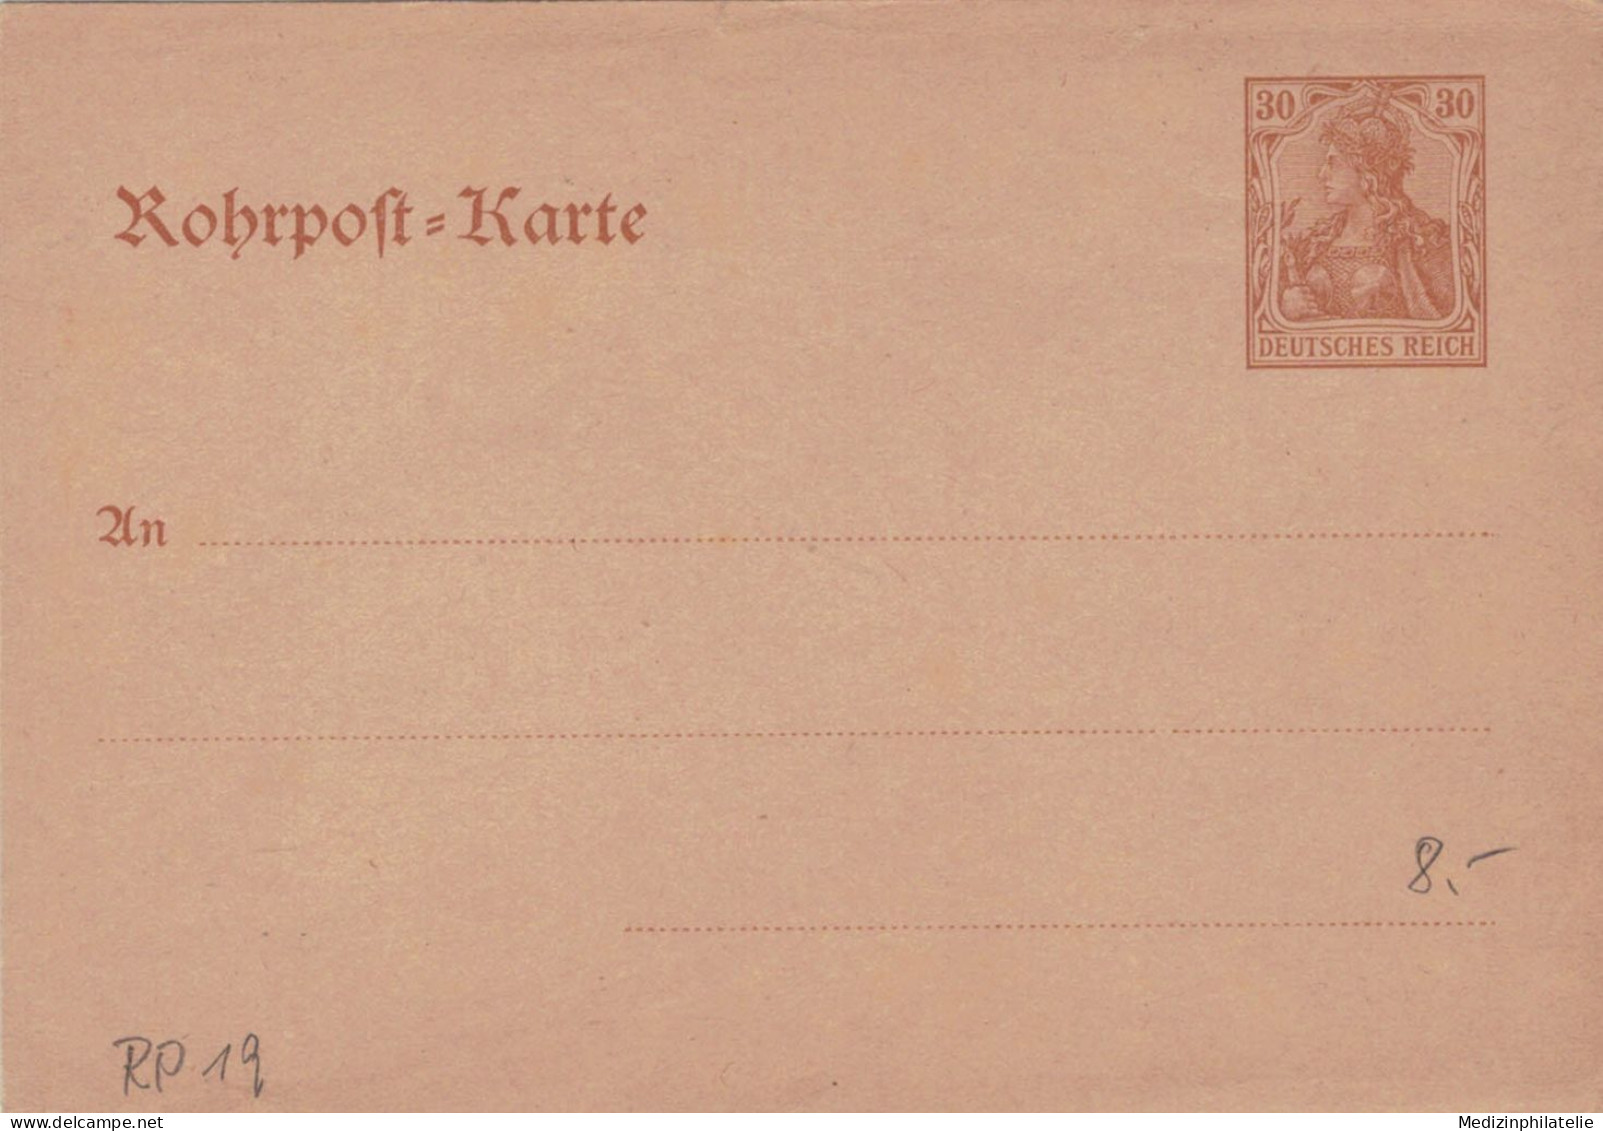 Rohrpost-Karte 30 Pf. Germania - Ungebraucht - 19 - Postkarten